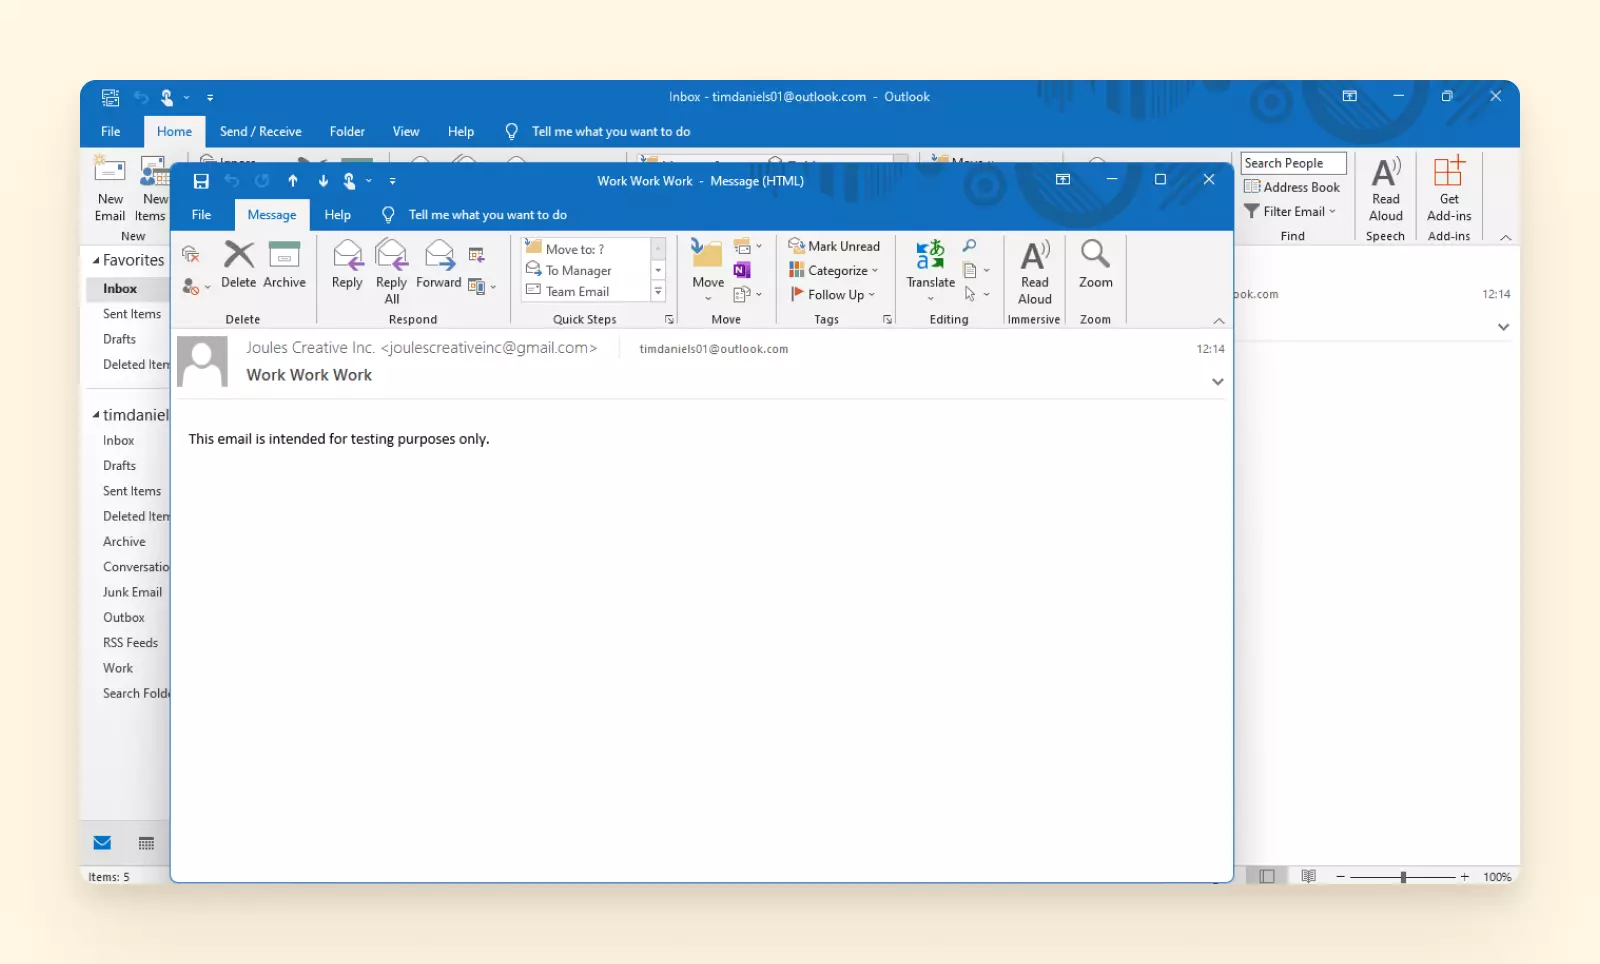 Email window in Outlook desktop